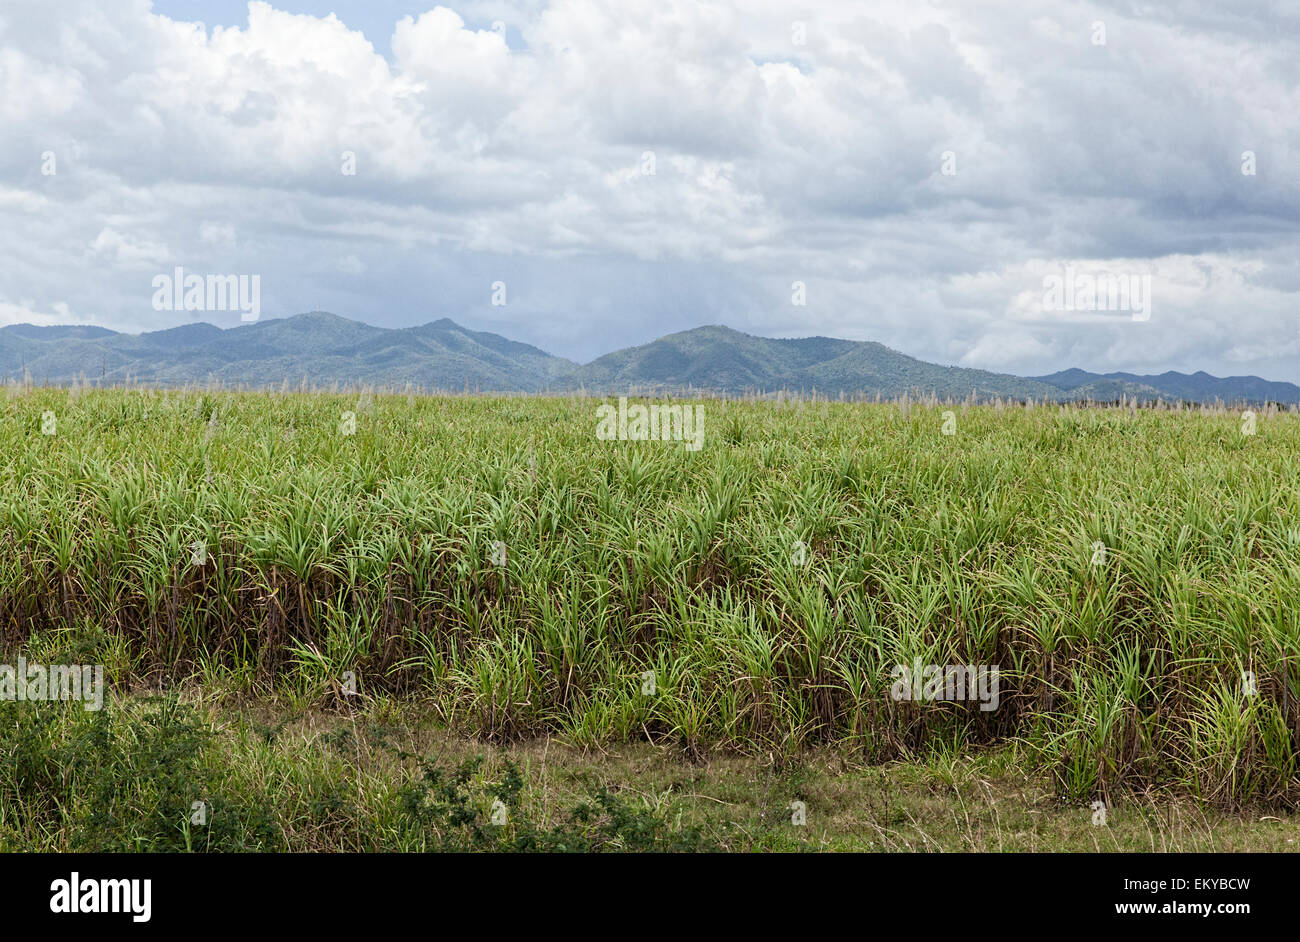 Caña de azúcar las plantas que crecen en los campos en una parte remota de Cuba con montañas y cielos nublados en la distancia Foto de stock